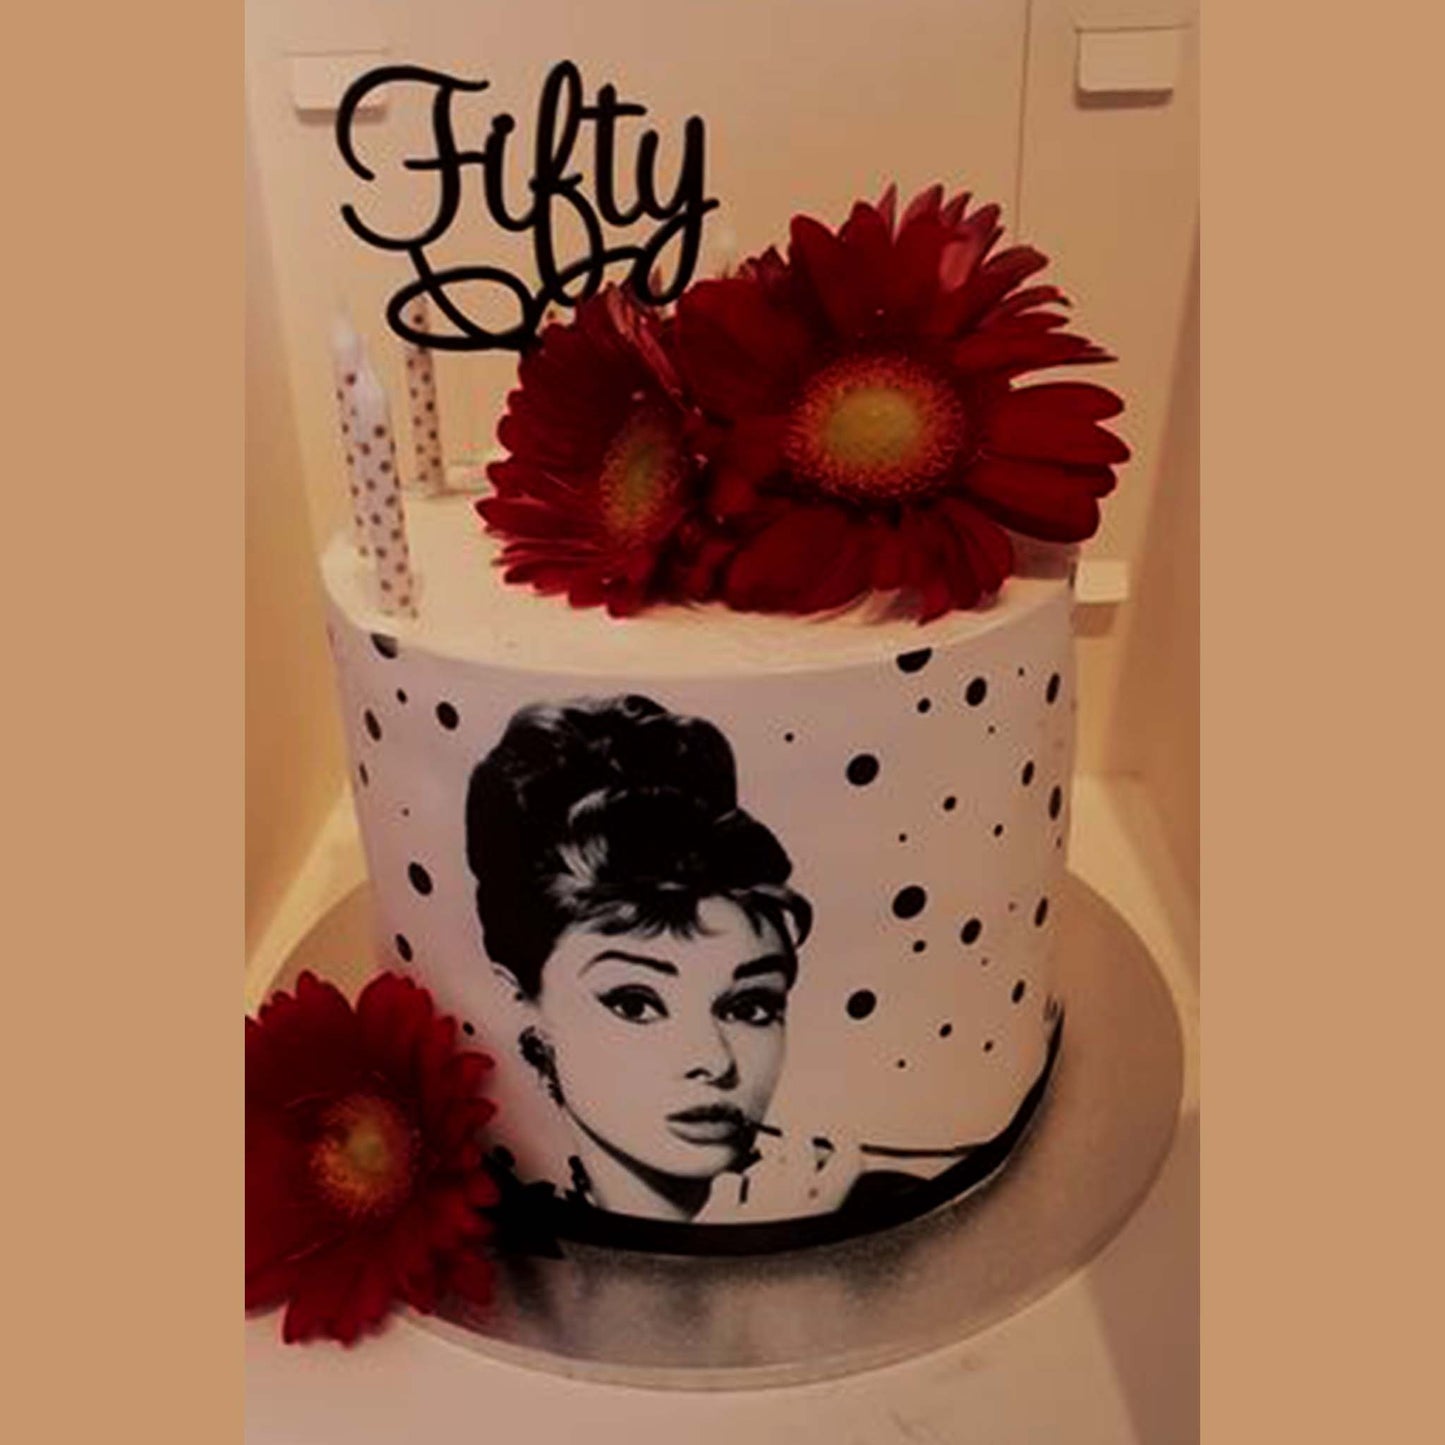 Audrey Hepburn inspired  - Icing Cake Wrap Edible Cake Topper, Edible Cake Image, ,printsoncakes